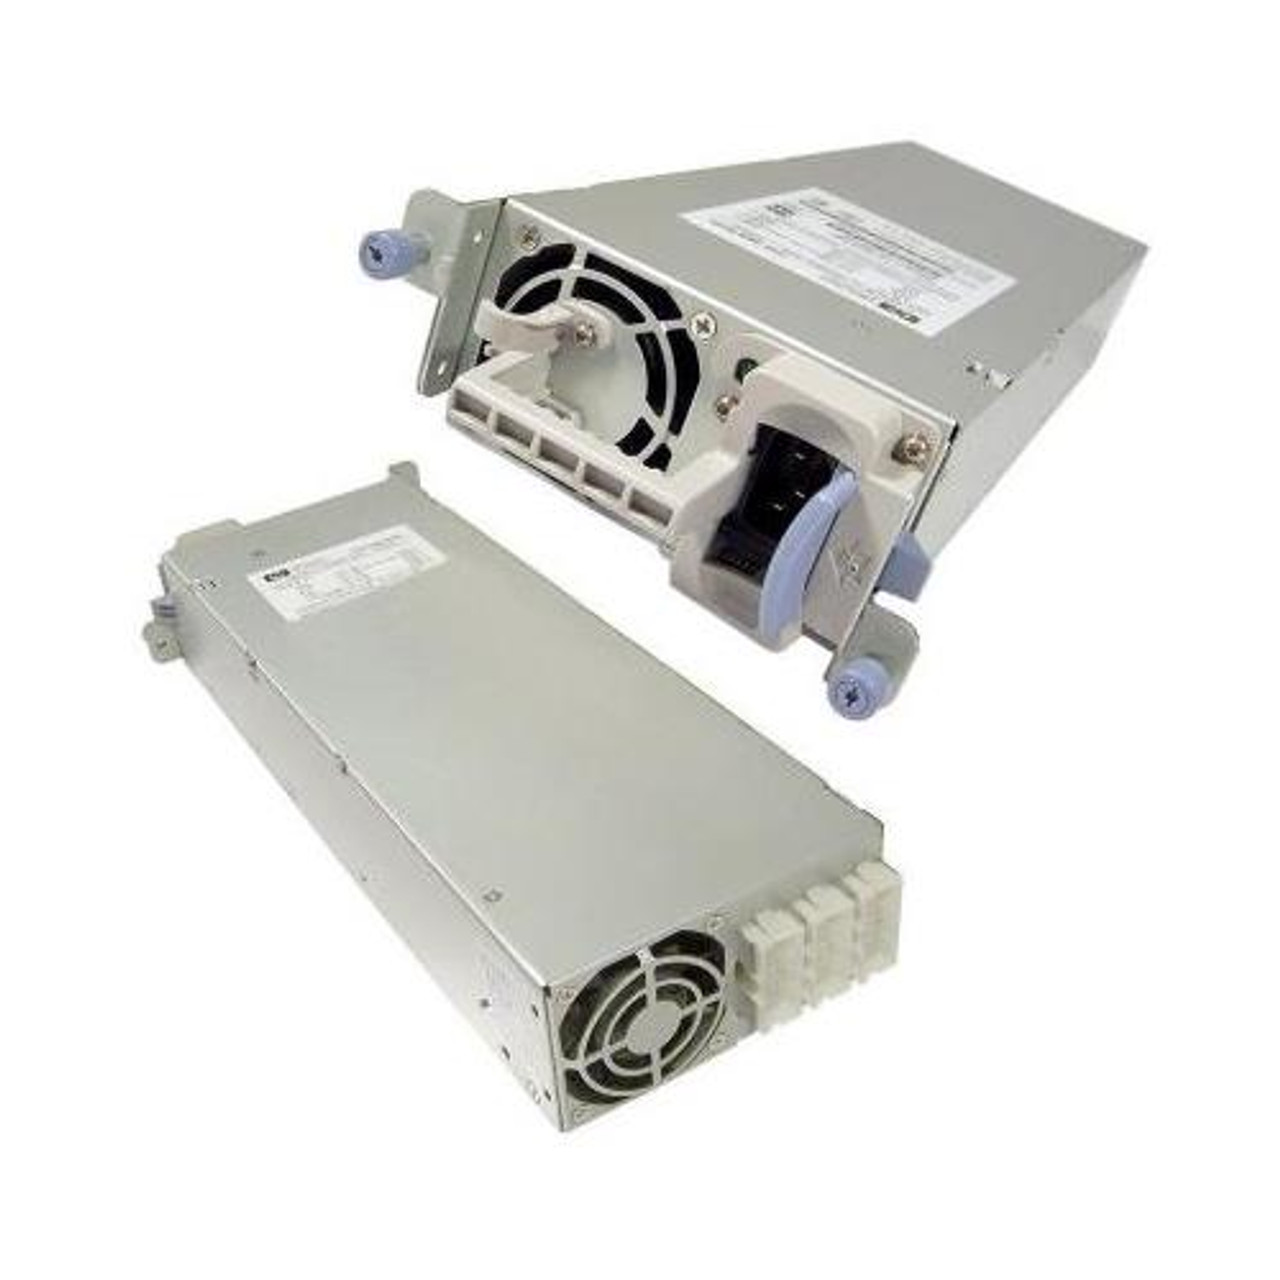 0950-3494 HP 350-Watts Redundant Hot Swap Power Supply for NetServer